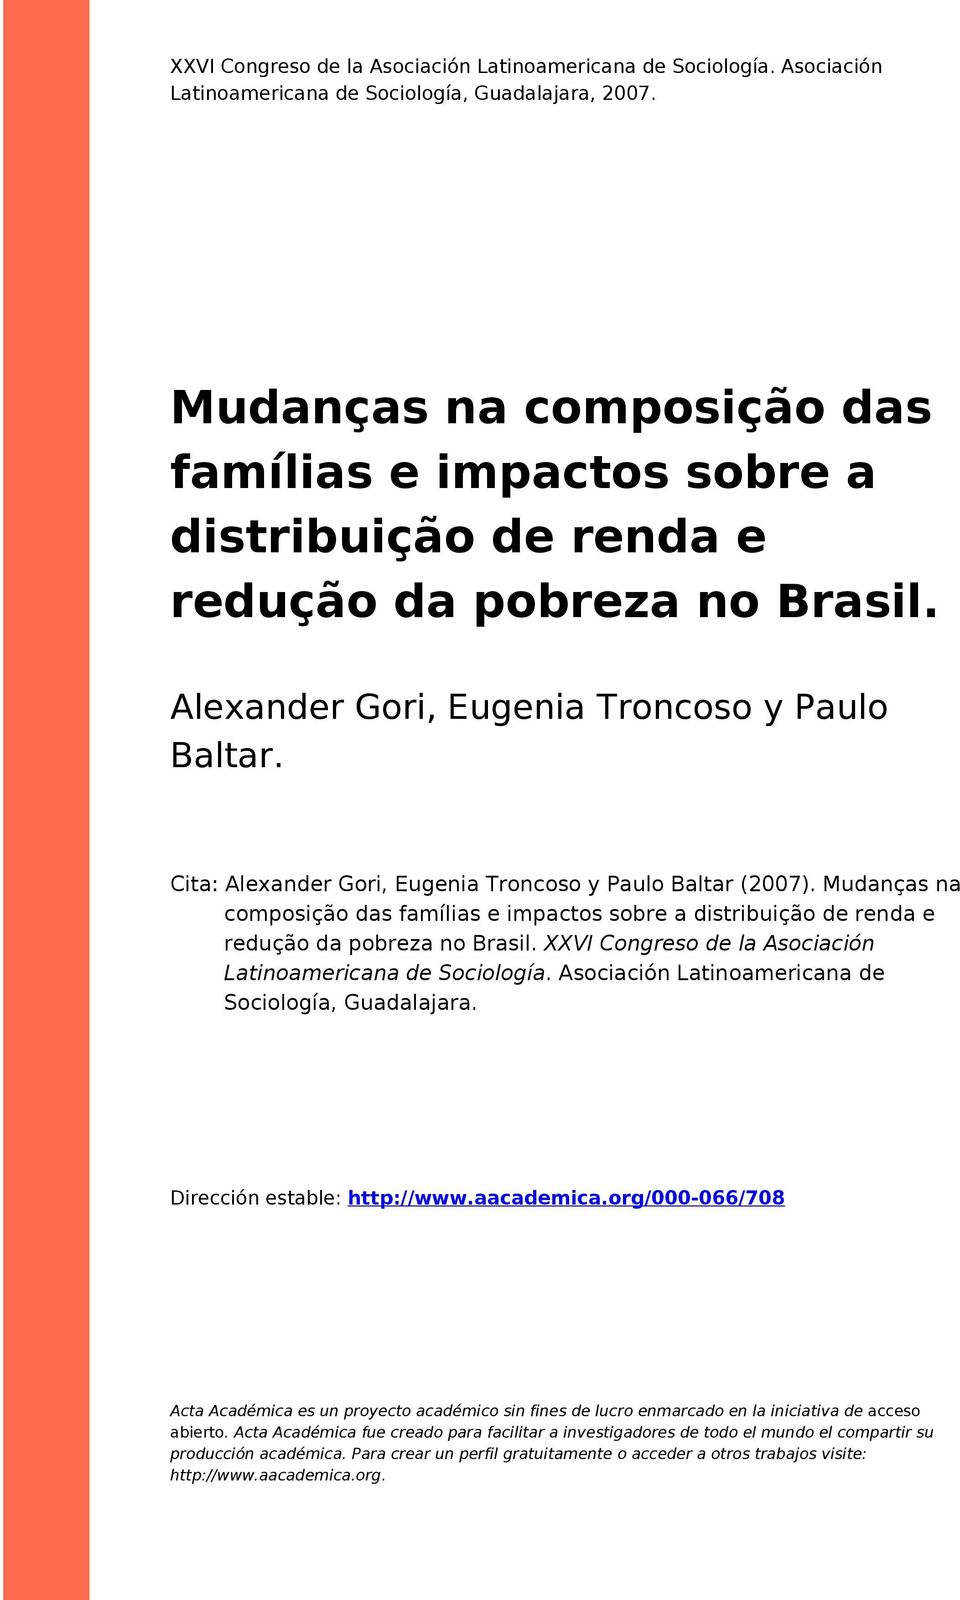 Cita: Alexander Gori, Eugenia Troncoso y Paulo Baltar (2007). Mudanças na composição das famílias e impactos sobre a distribuição de renda e redução da pobreza no Brasil.